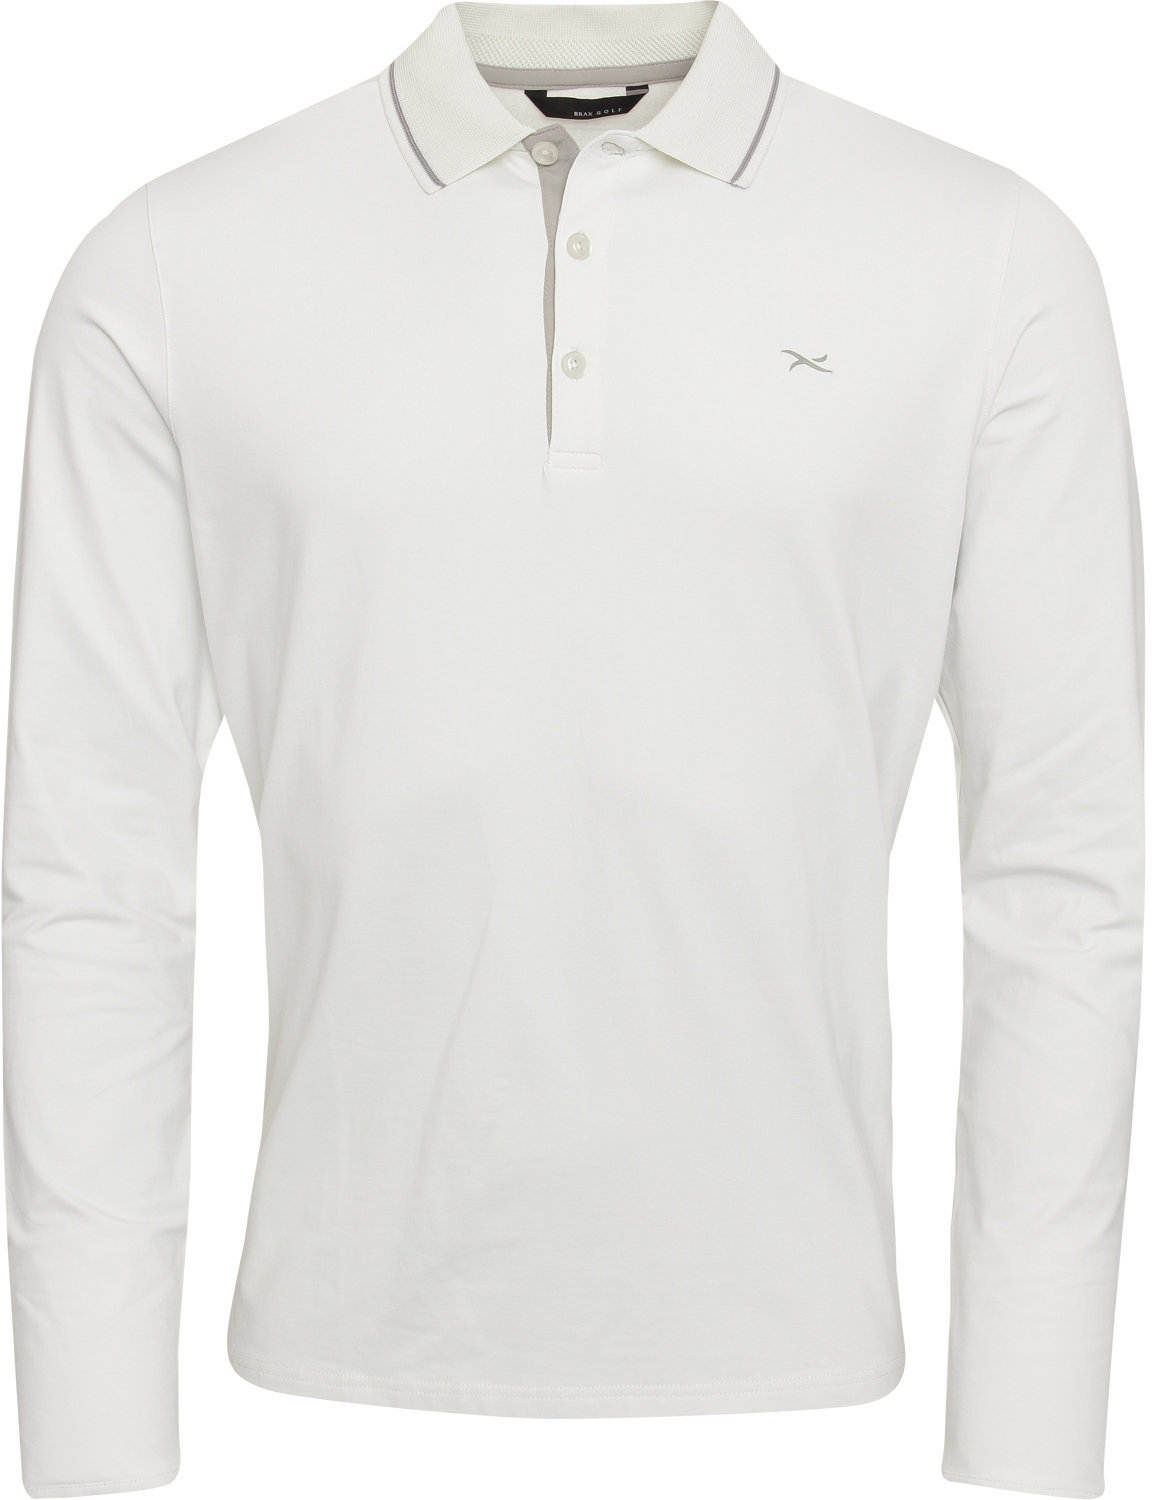 Koszulka Polo Brax Stuart Koszulka Polo Do Golfa Męska Z Długim Rękawem Snow M